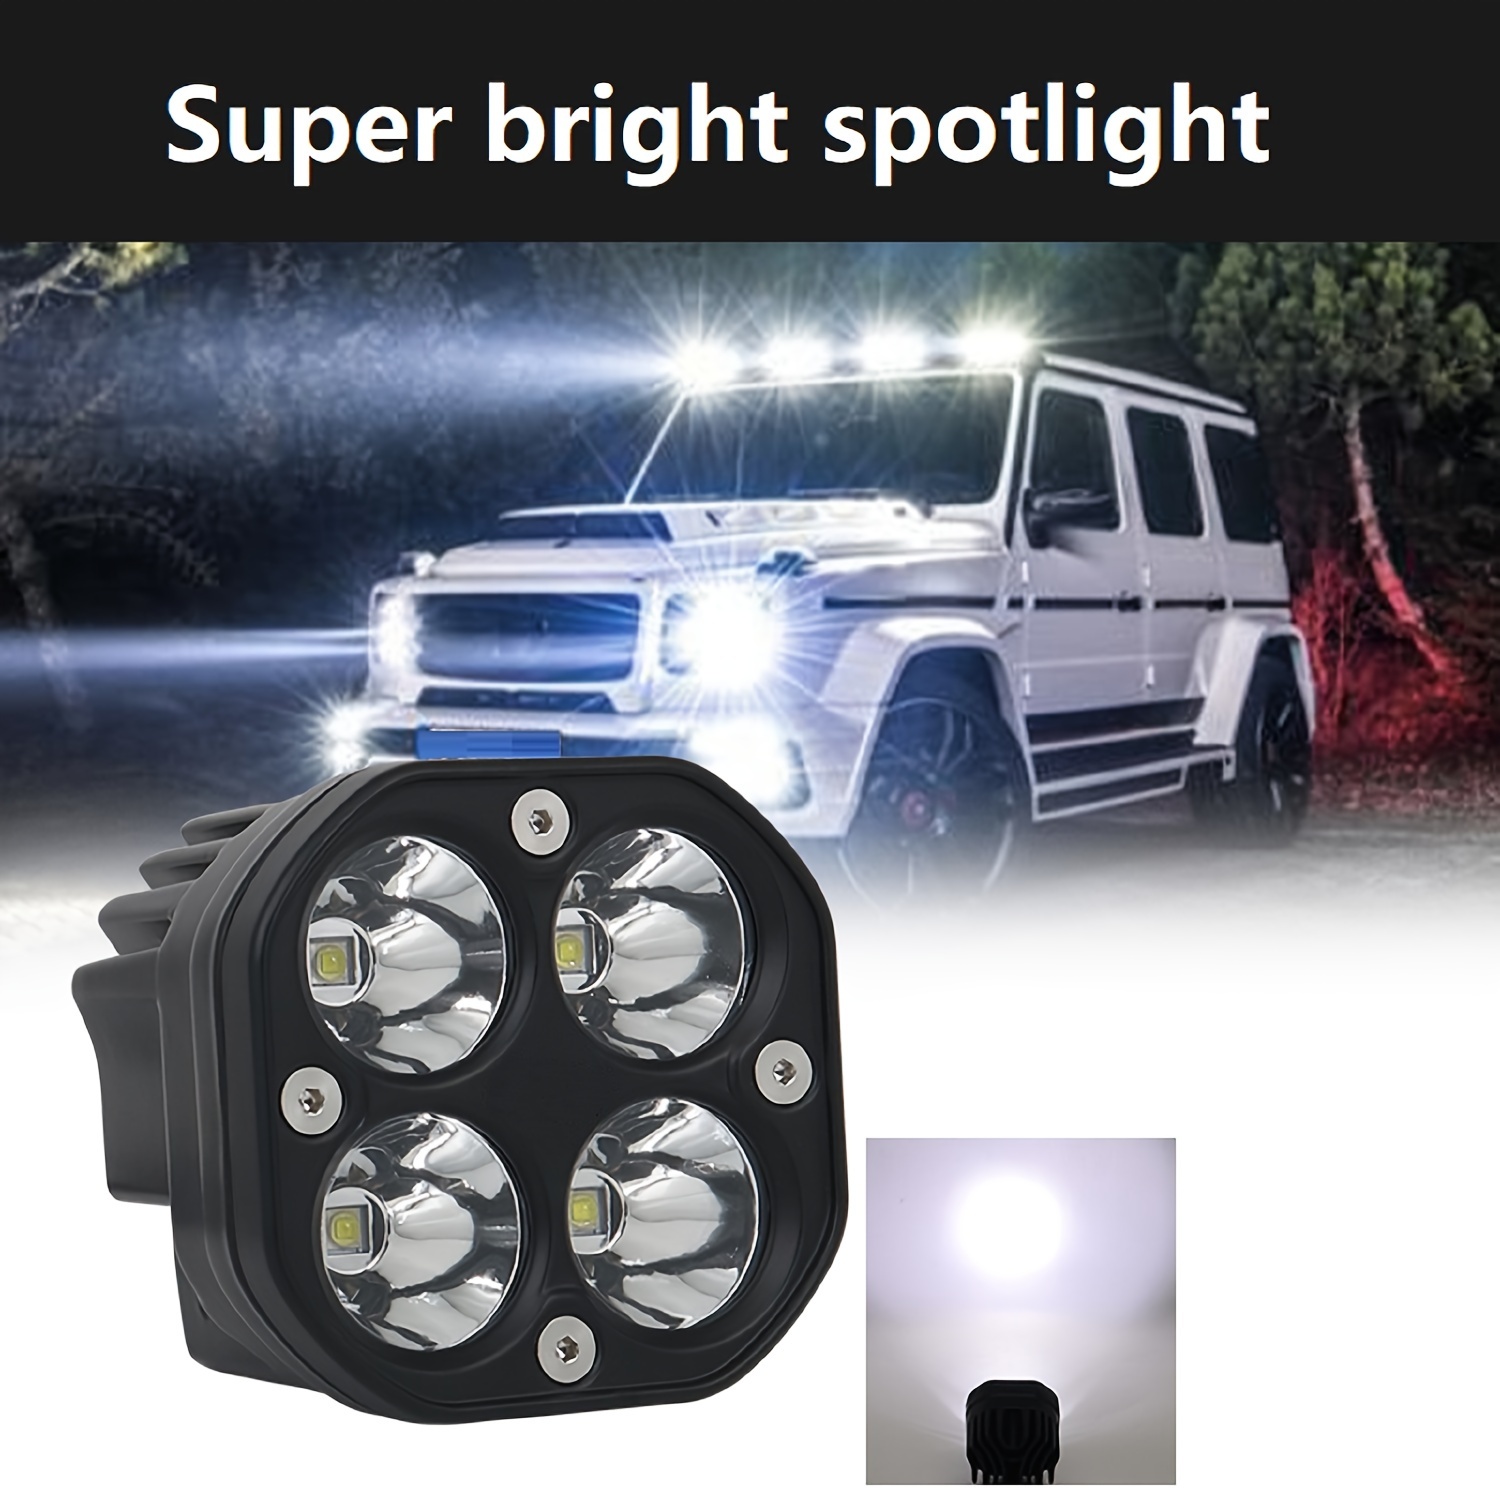 Square 20W LED Spotlight 12V 24V LED Work Light for Car Fog Lamp